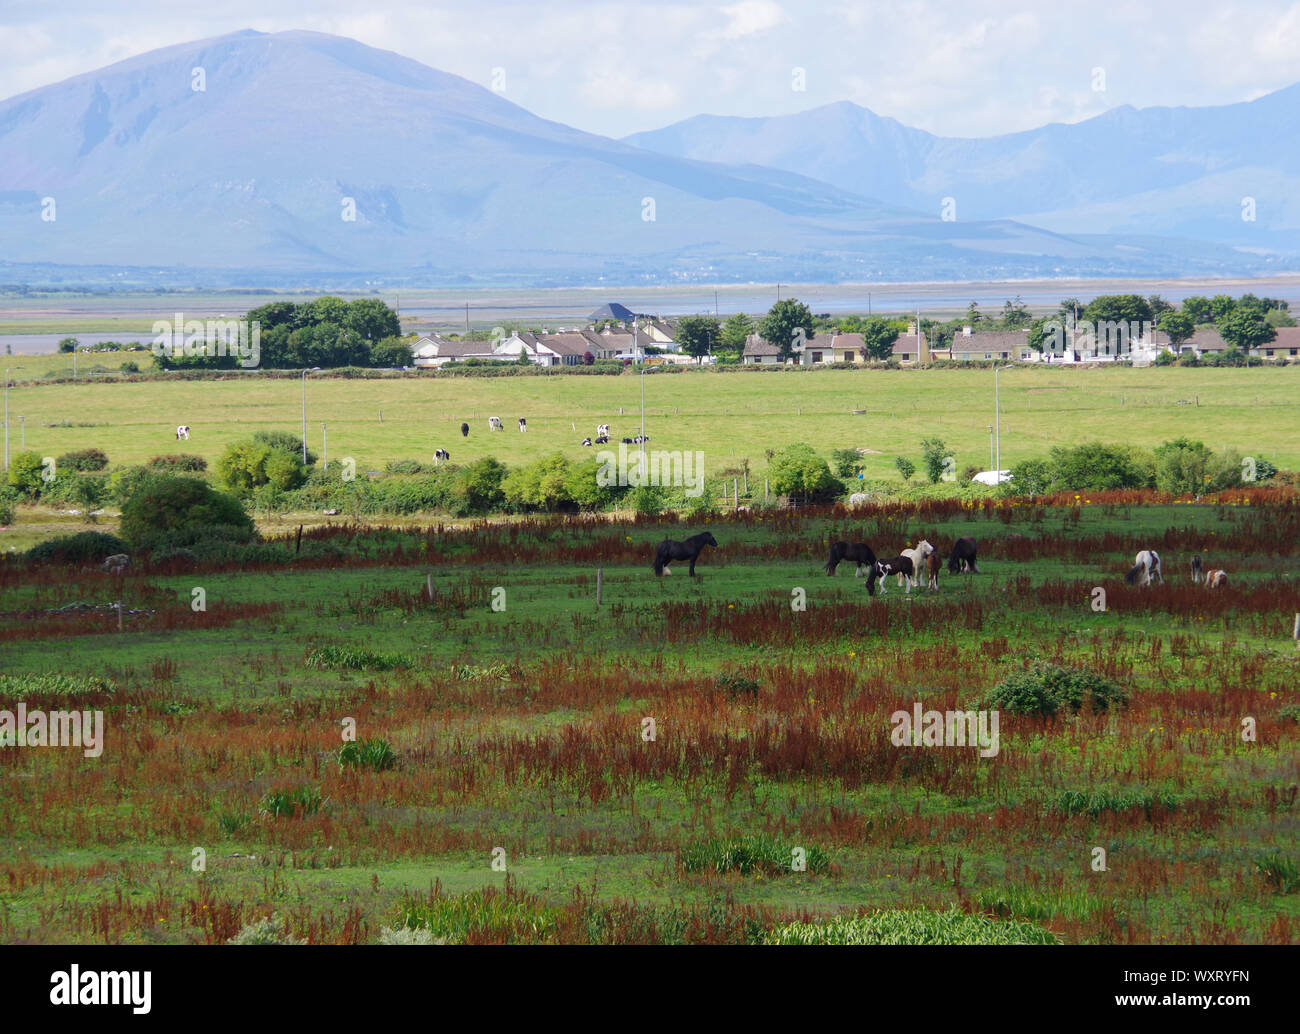 Irish Landscape with Mountains & Horses Stock Photo